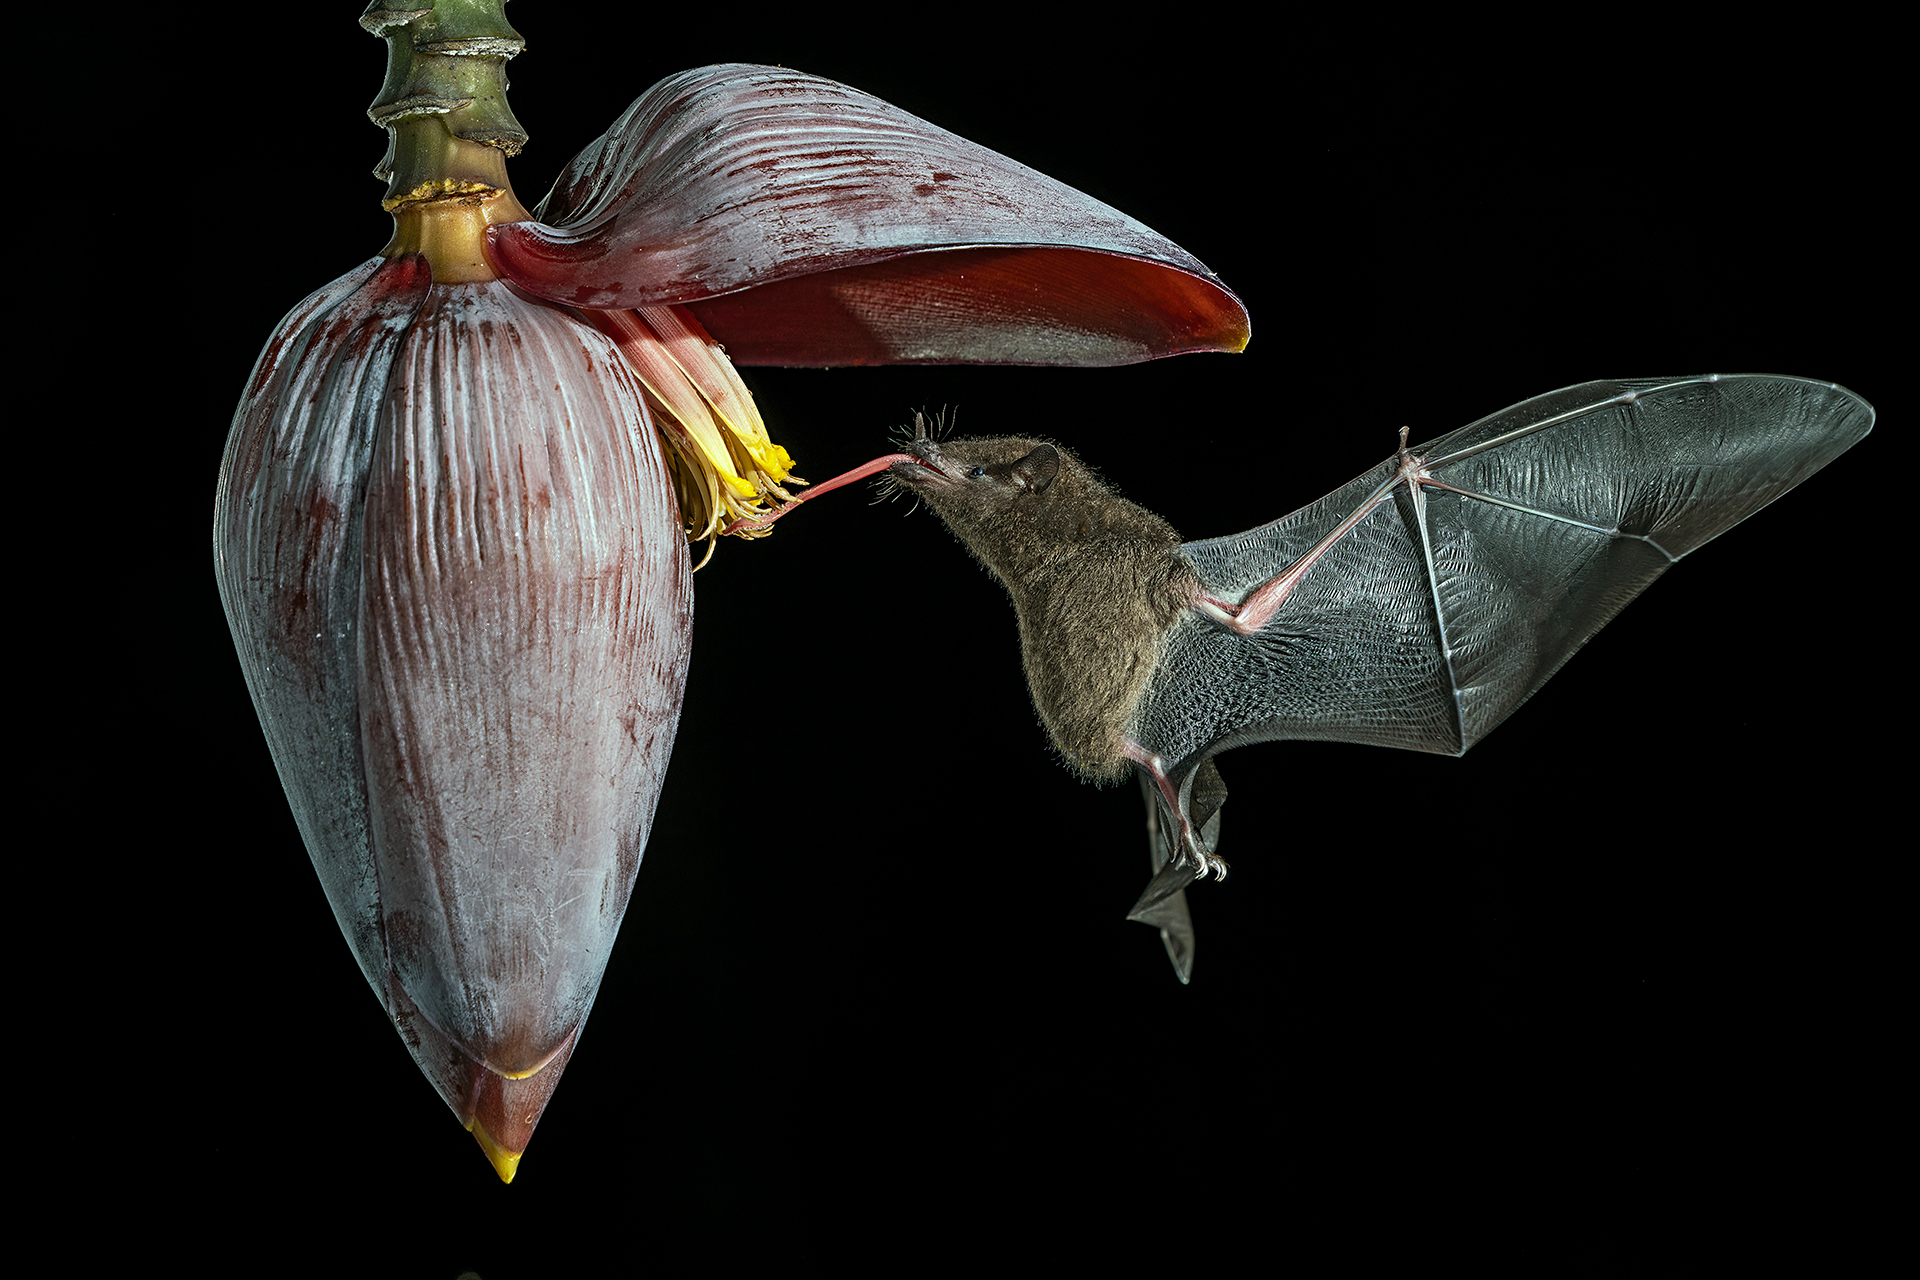 Nectar bat n9. Foto Gianni Maitan 